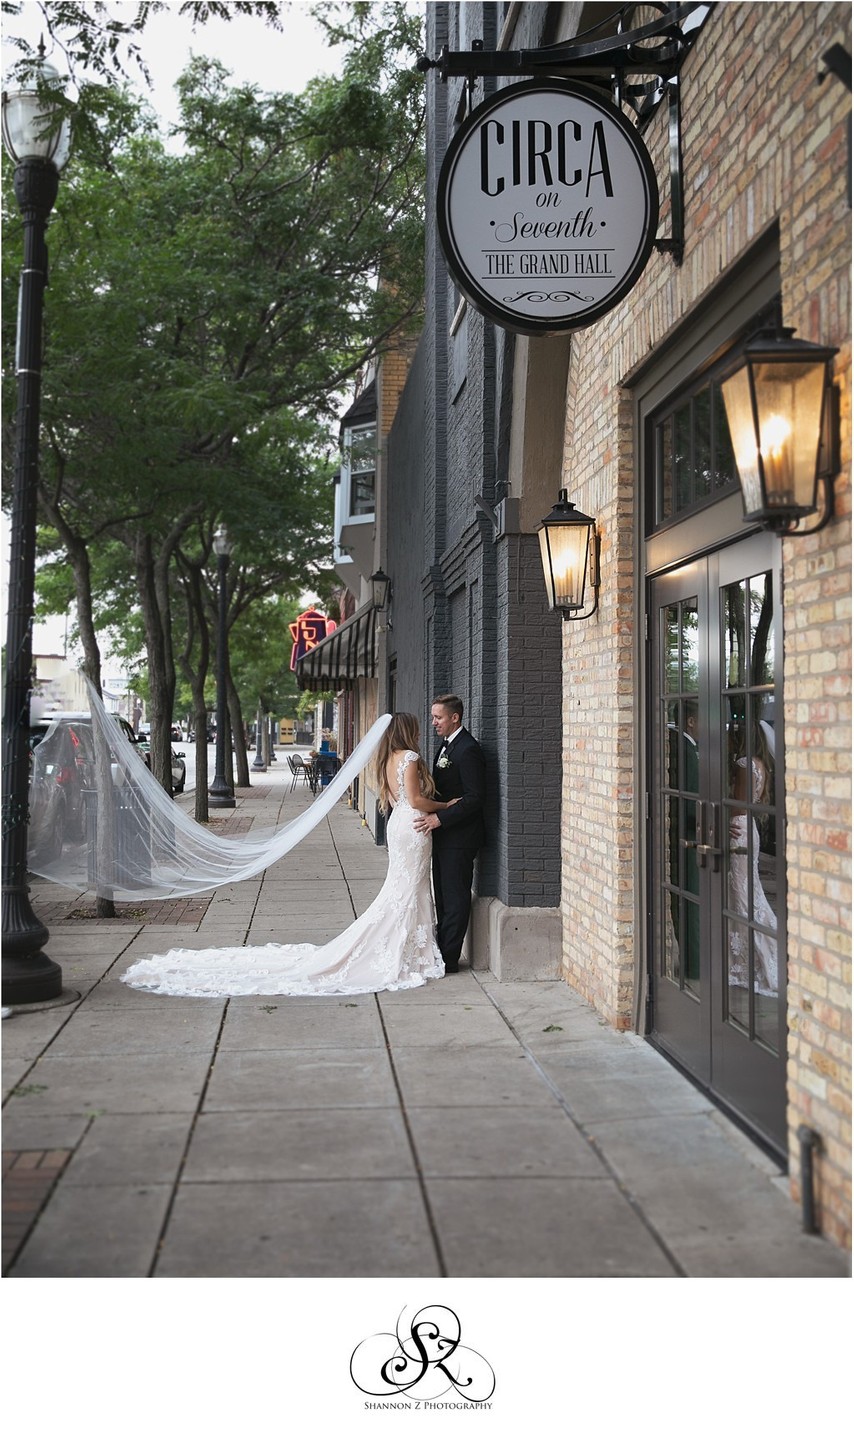 Circa Wedding Photos: Outside 7th Ave